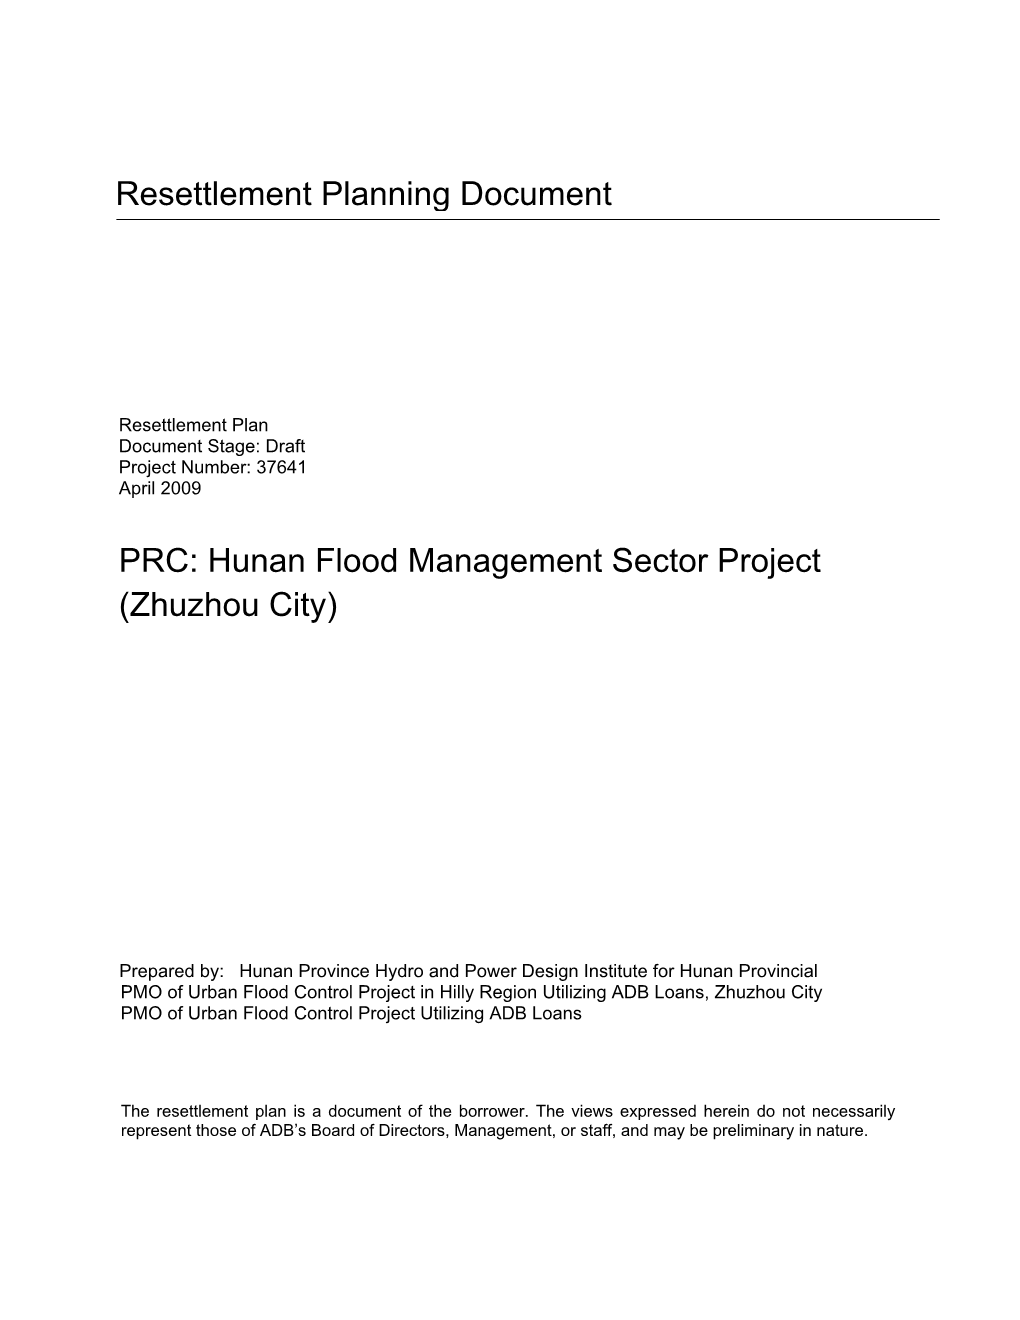 Hunan Flood Management Sector Project (Zhuzhou City)